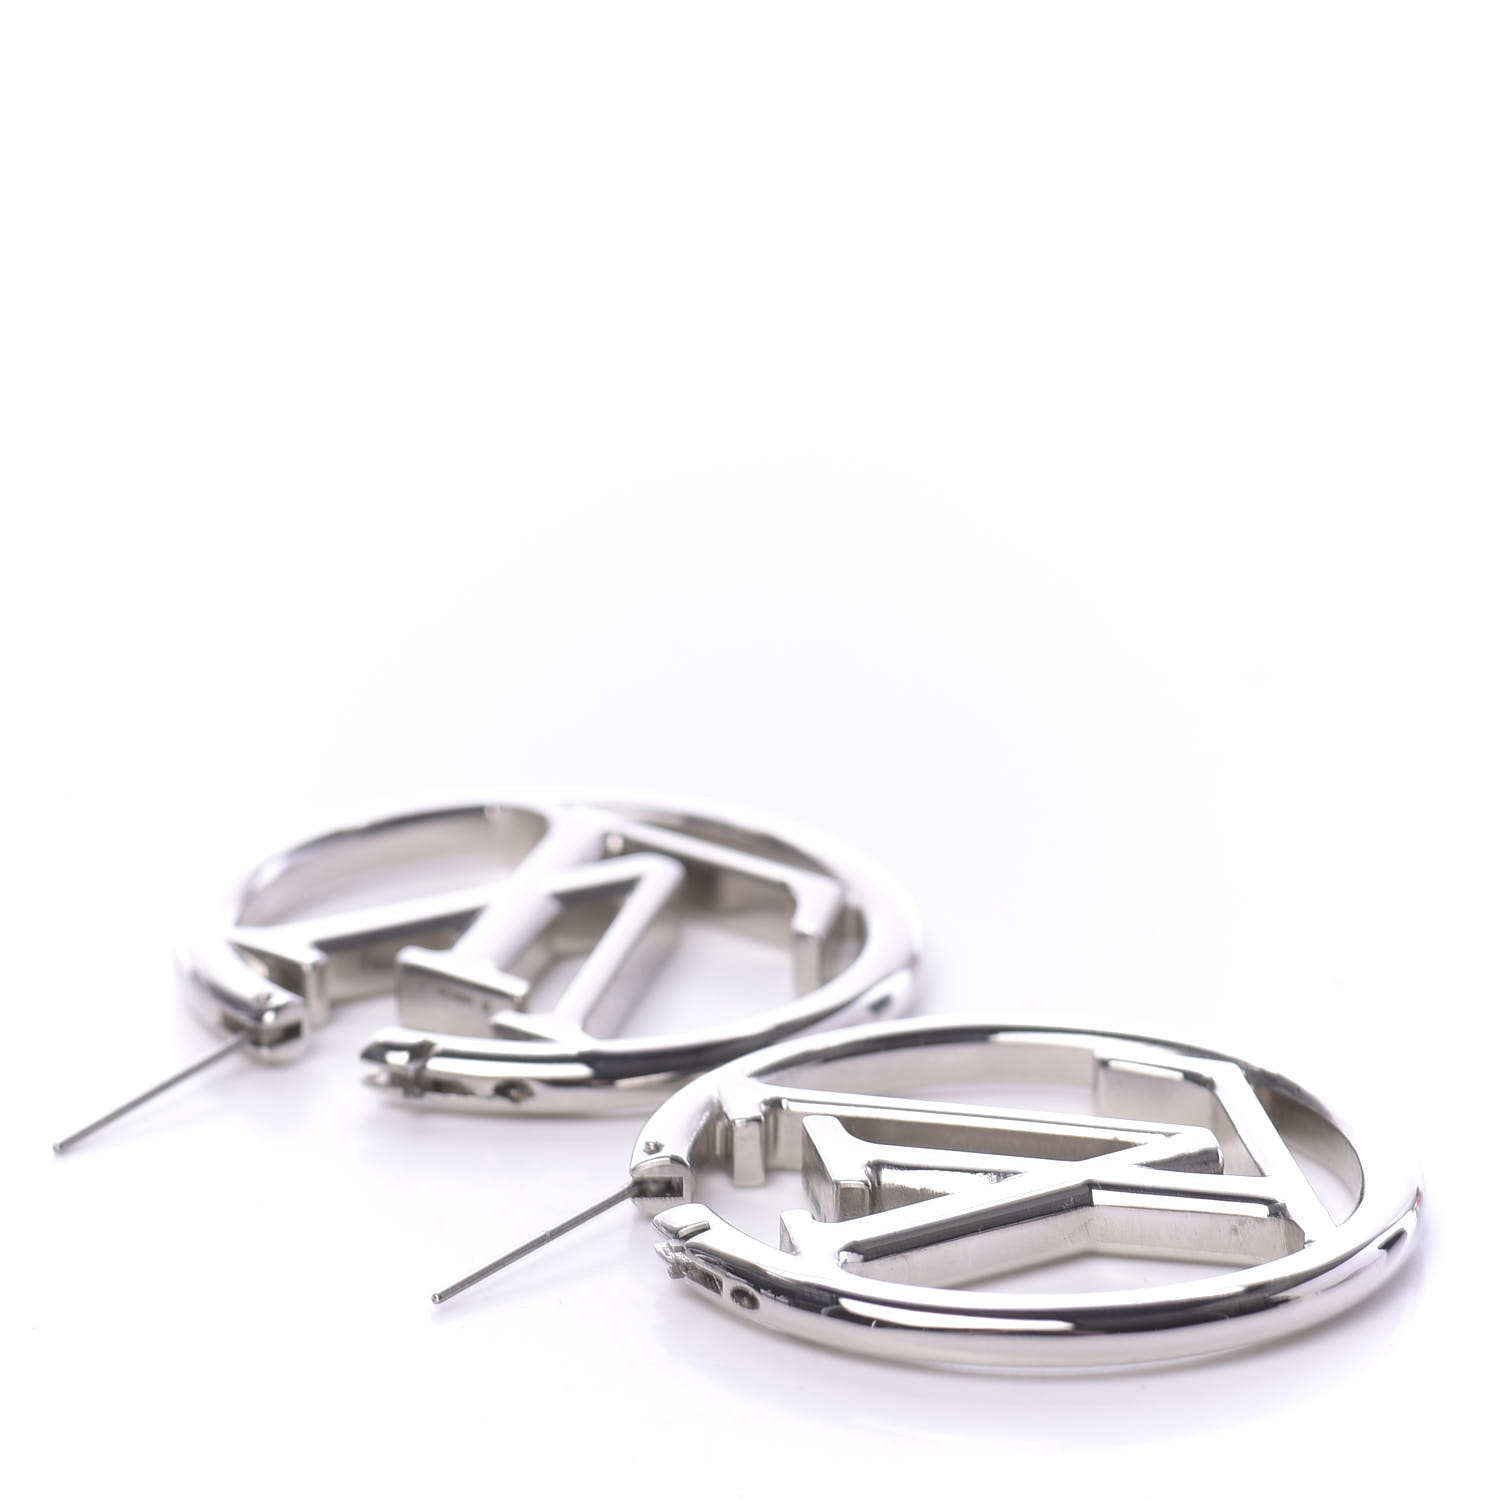 Shop Louis Vuitton Louise Hoop Earrings (M64288, Louise GM hoop earrings,  M80136) by Mikrie